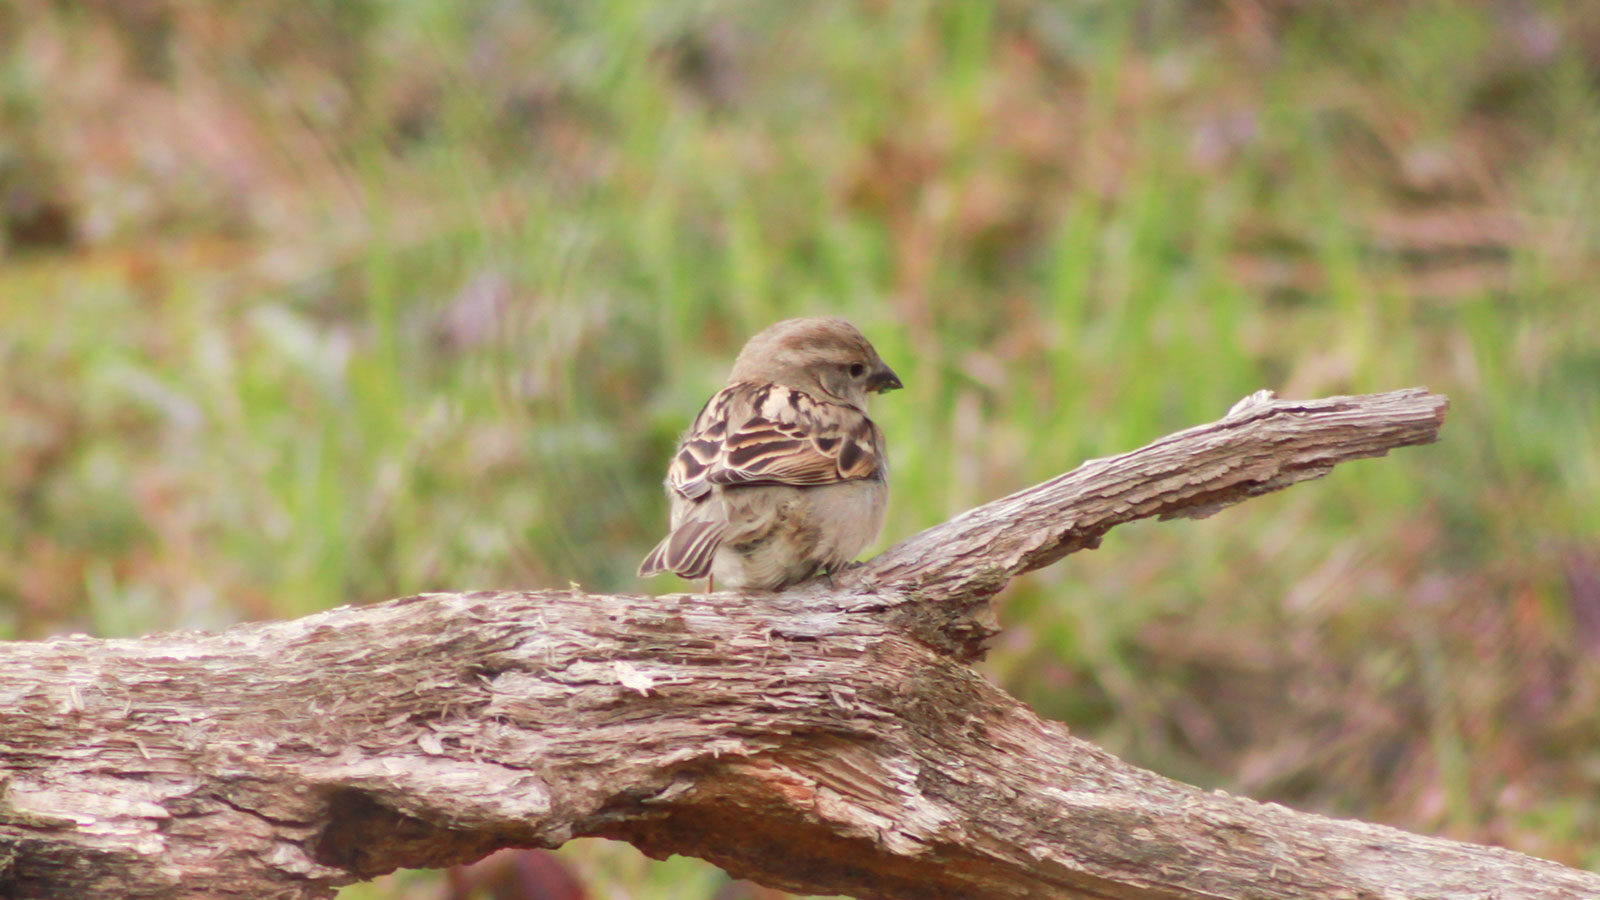 Female house sparrow on a fallen log